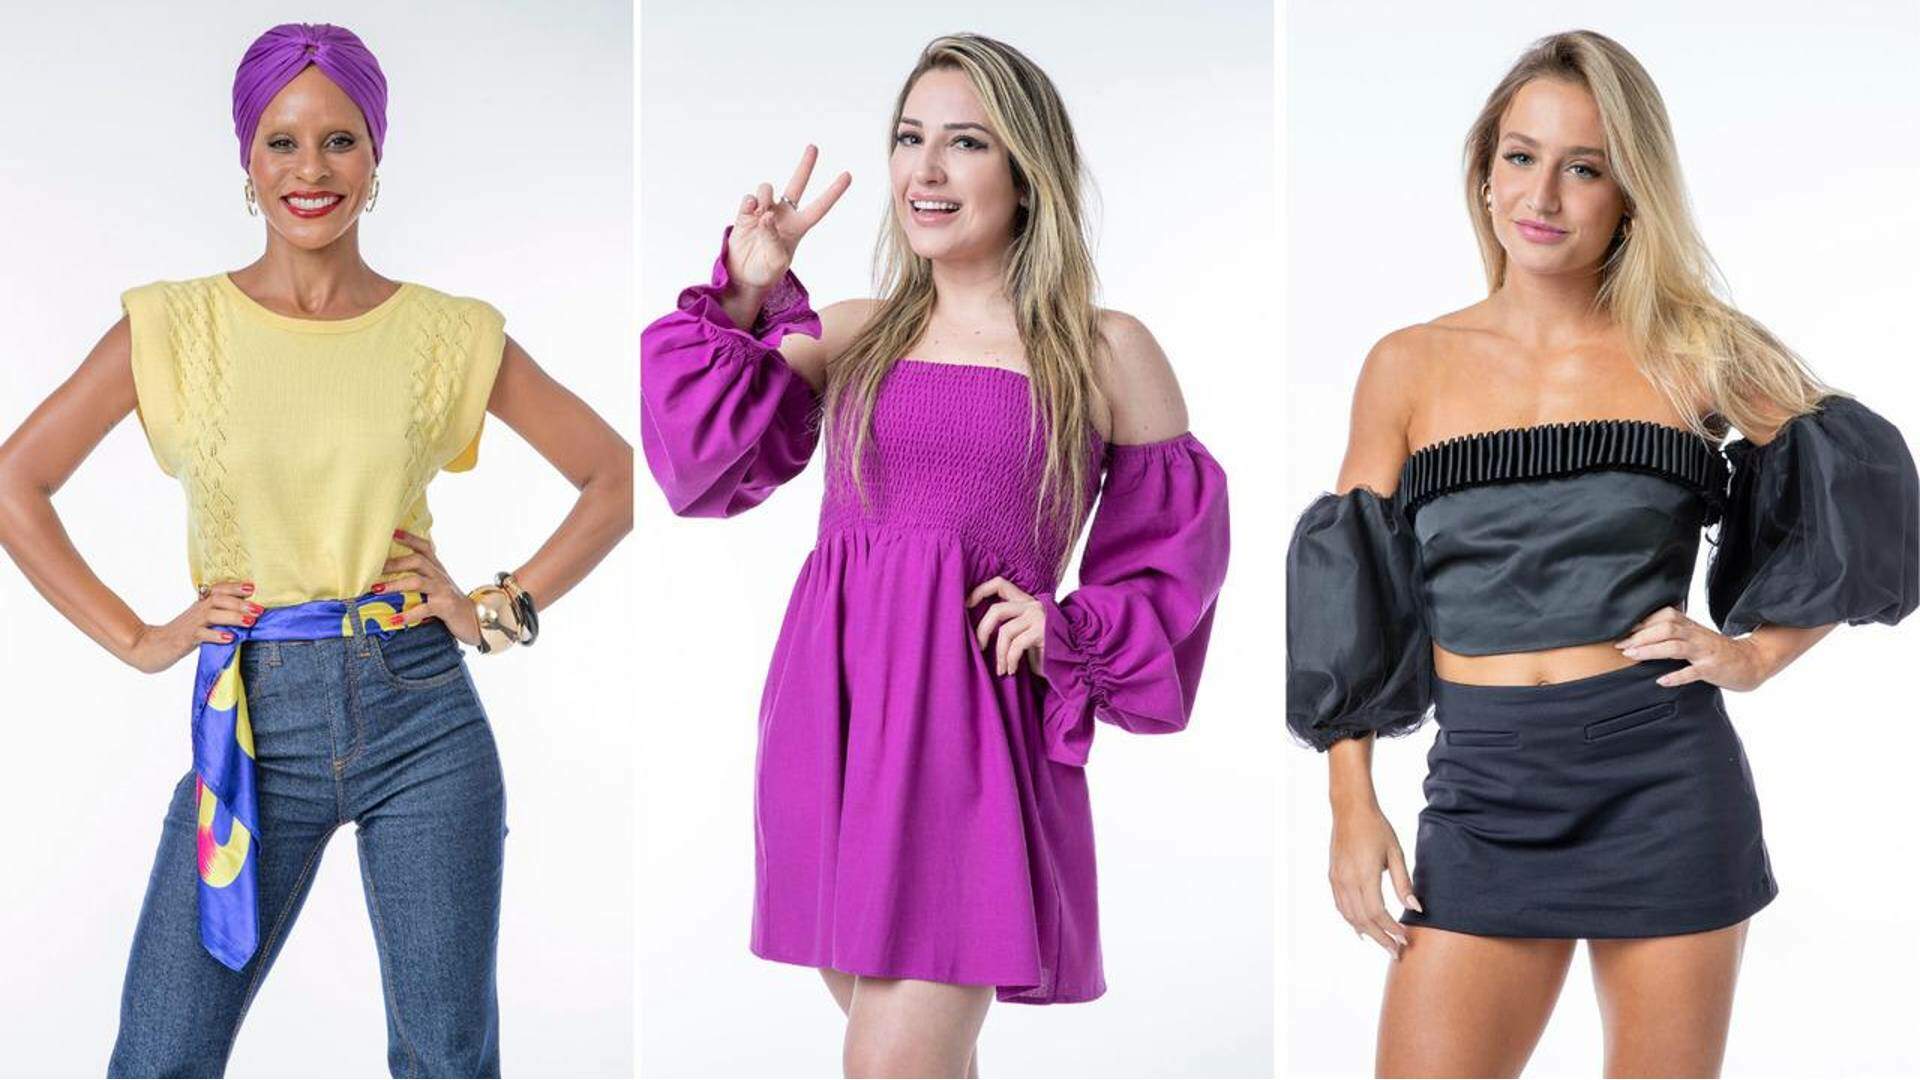 BBB 23: Amanda, Bruna Griphao ou Aline? Enquete revela quem será a vencedora do reality show - Metropolitana FM